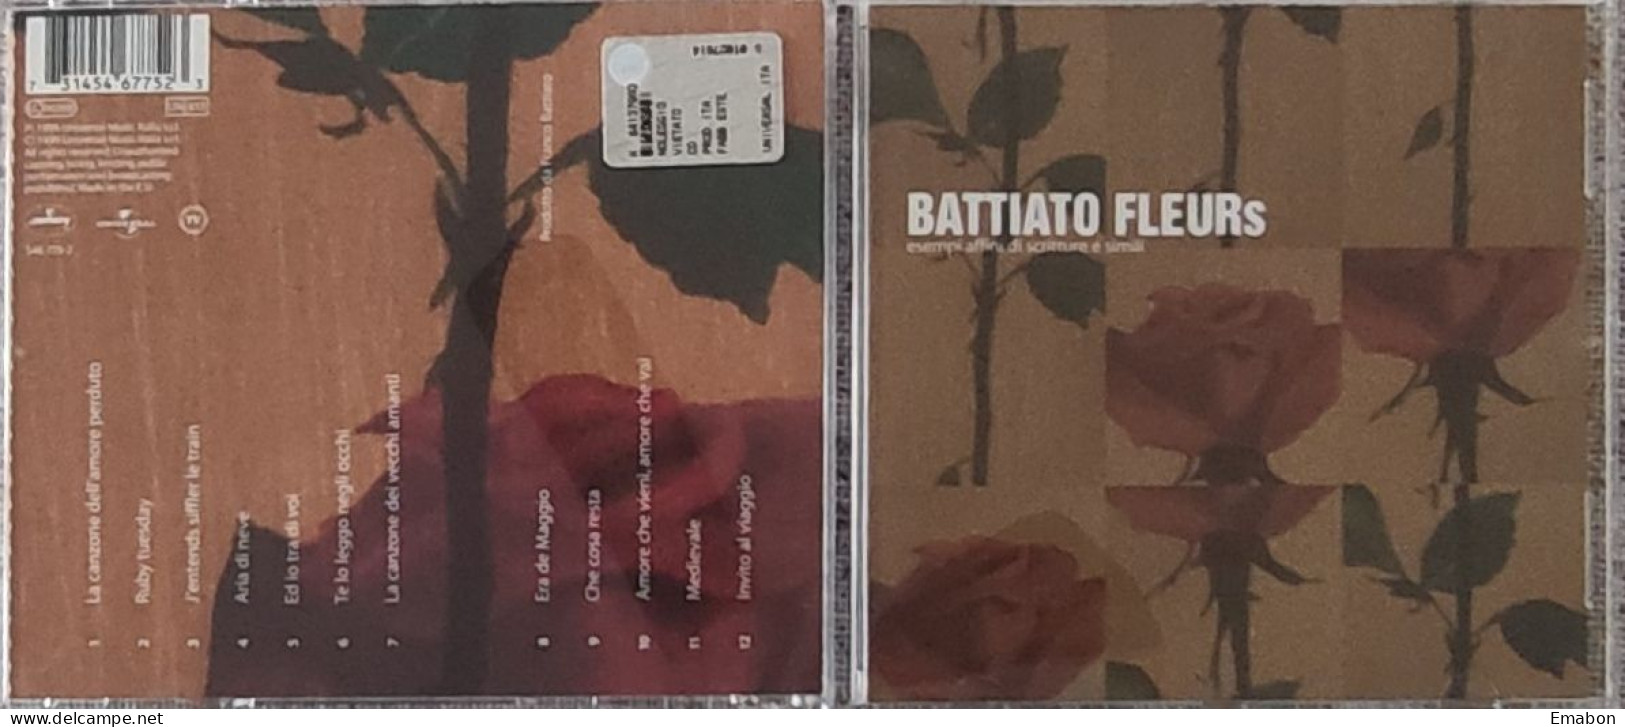 BORGATTA -  Cd  FRANCO BATTIATO   - FLEURS  - UNIVERSAL MUSIC  1999  -  USATO In Buono Stato - Other - Italian Music